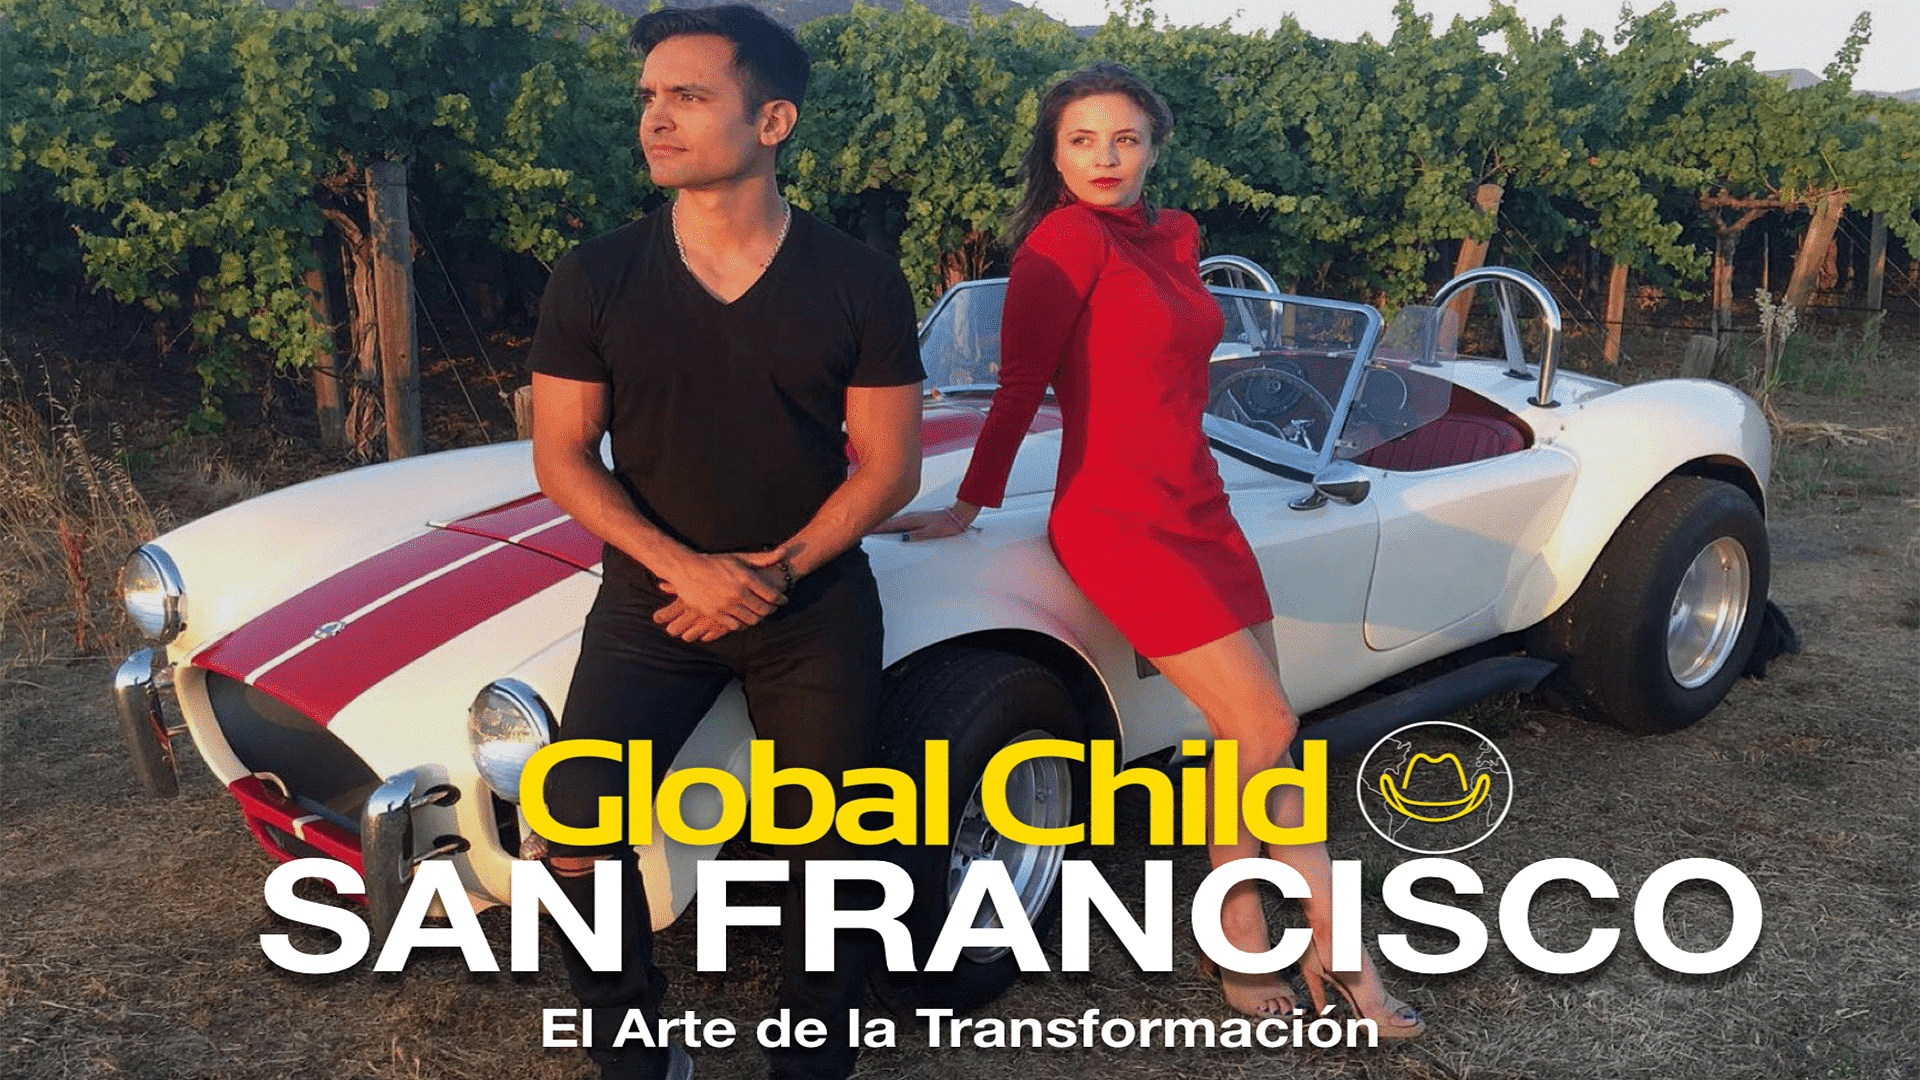 Global Child San Francisco "El arte de la transformacion"